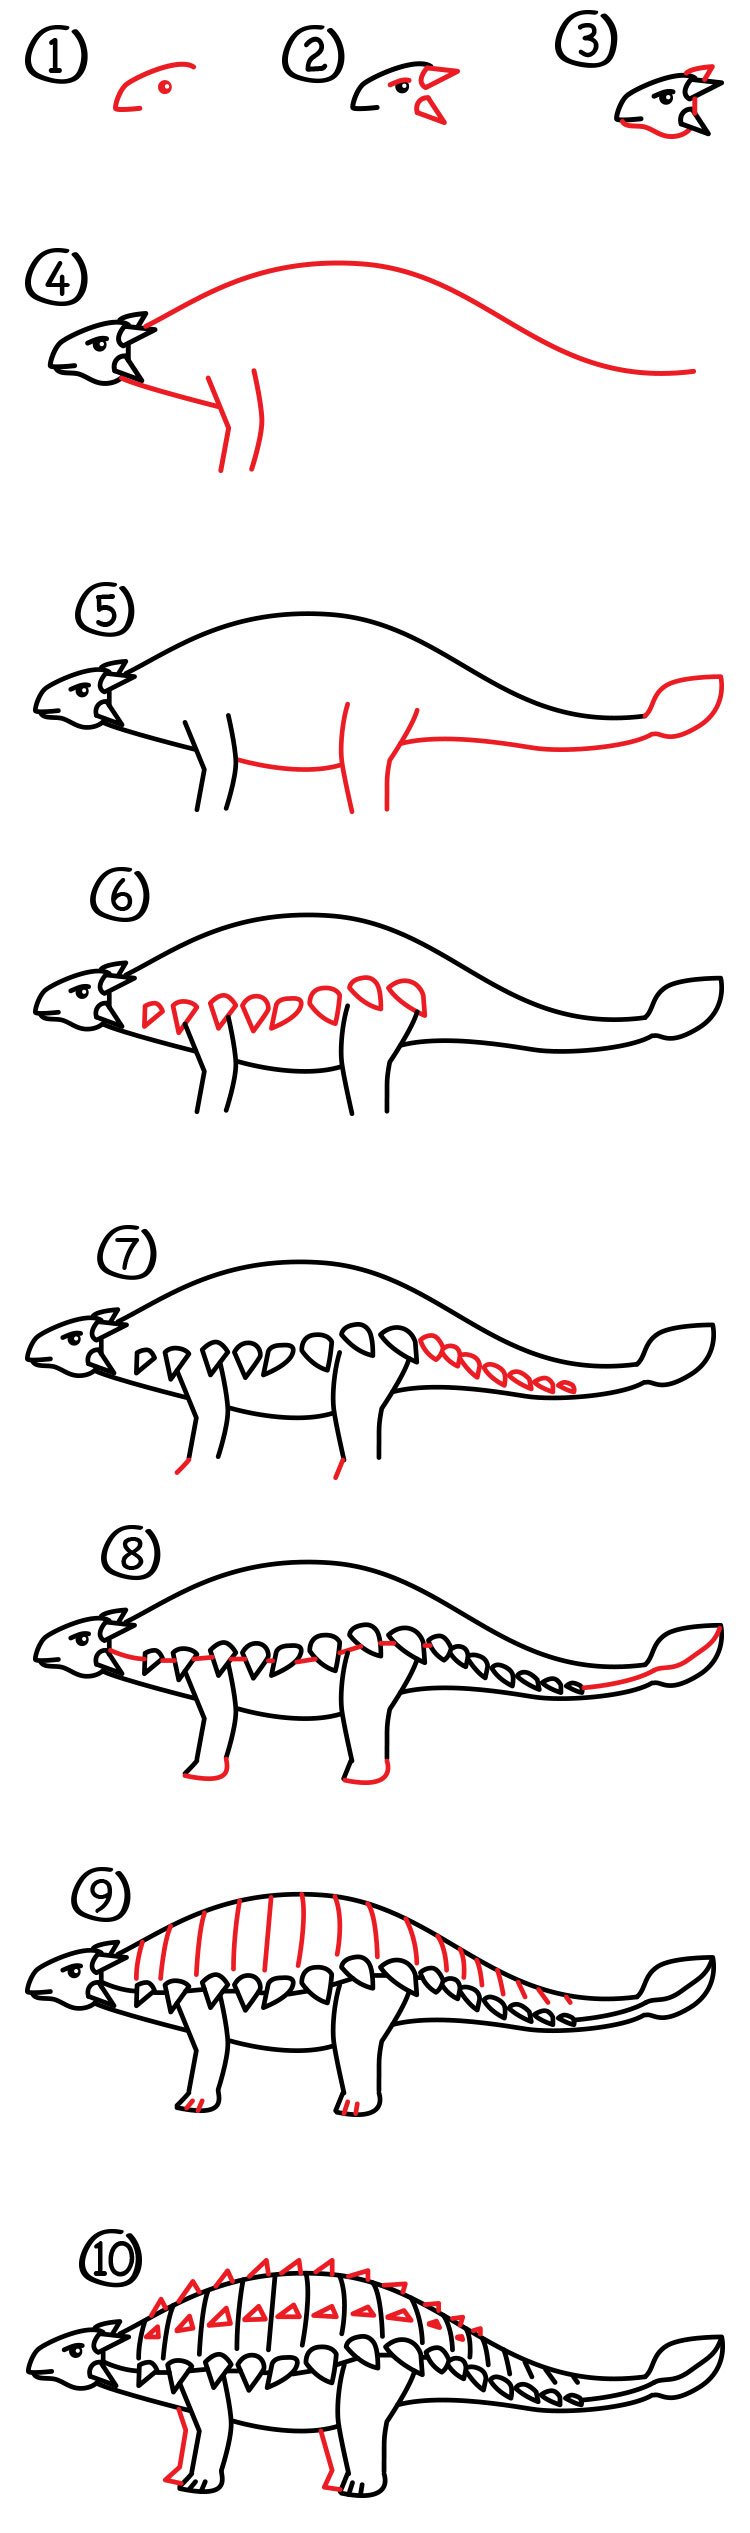 Рисунок Анкилозавра поэтапному